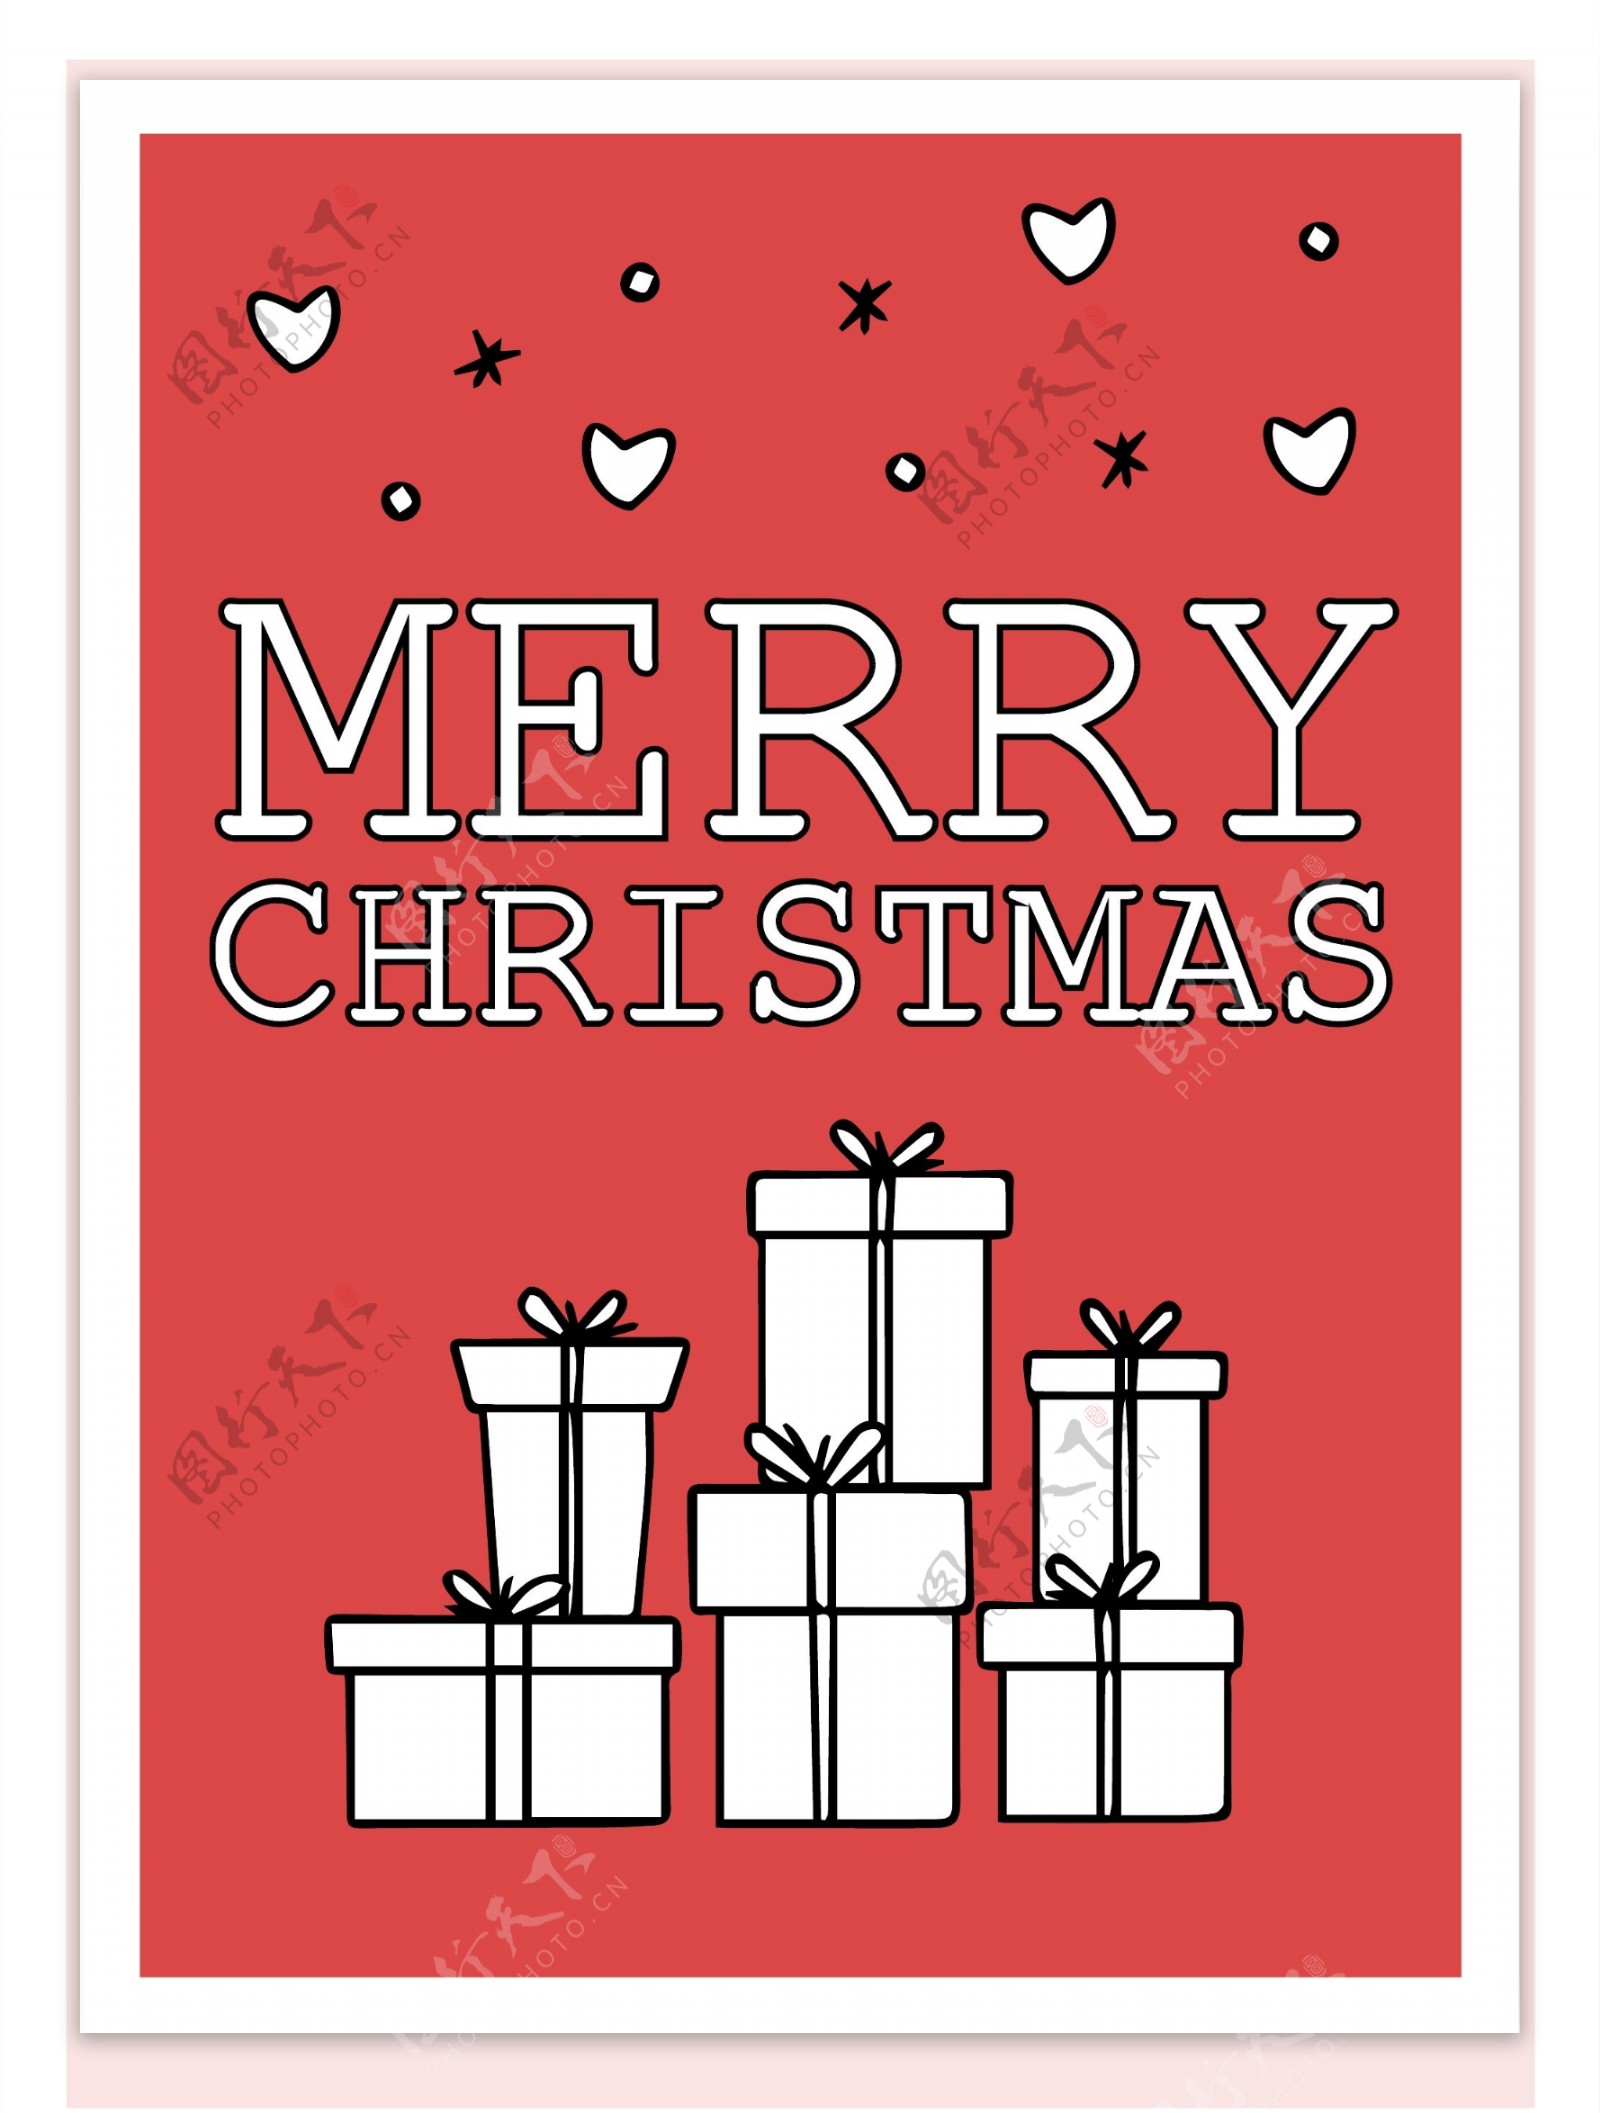 欧式圣诞节字体贺卡手绘背景素材